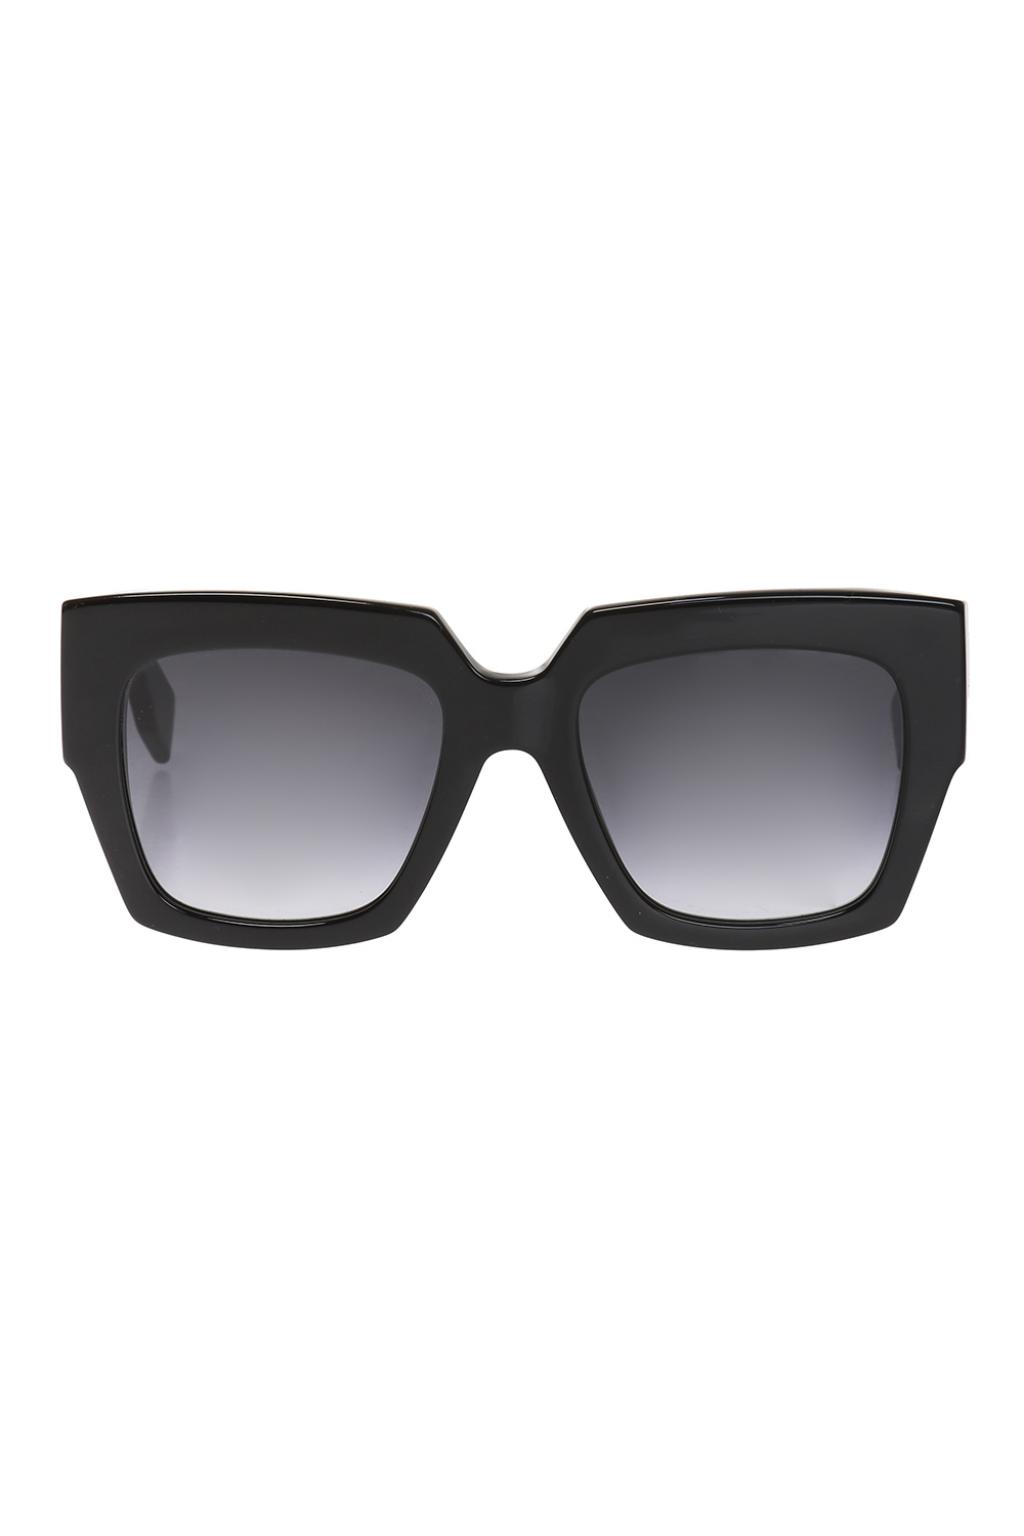 Sunglasses Fendi - Vitkac Sweden